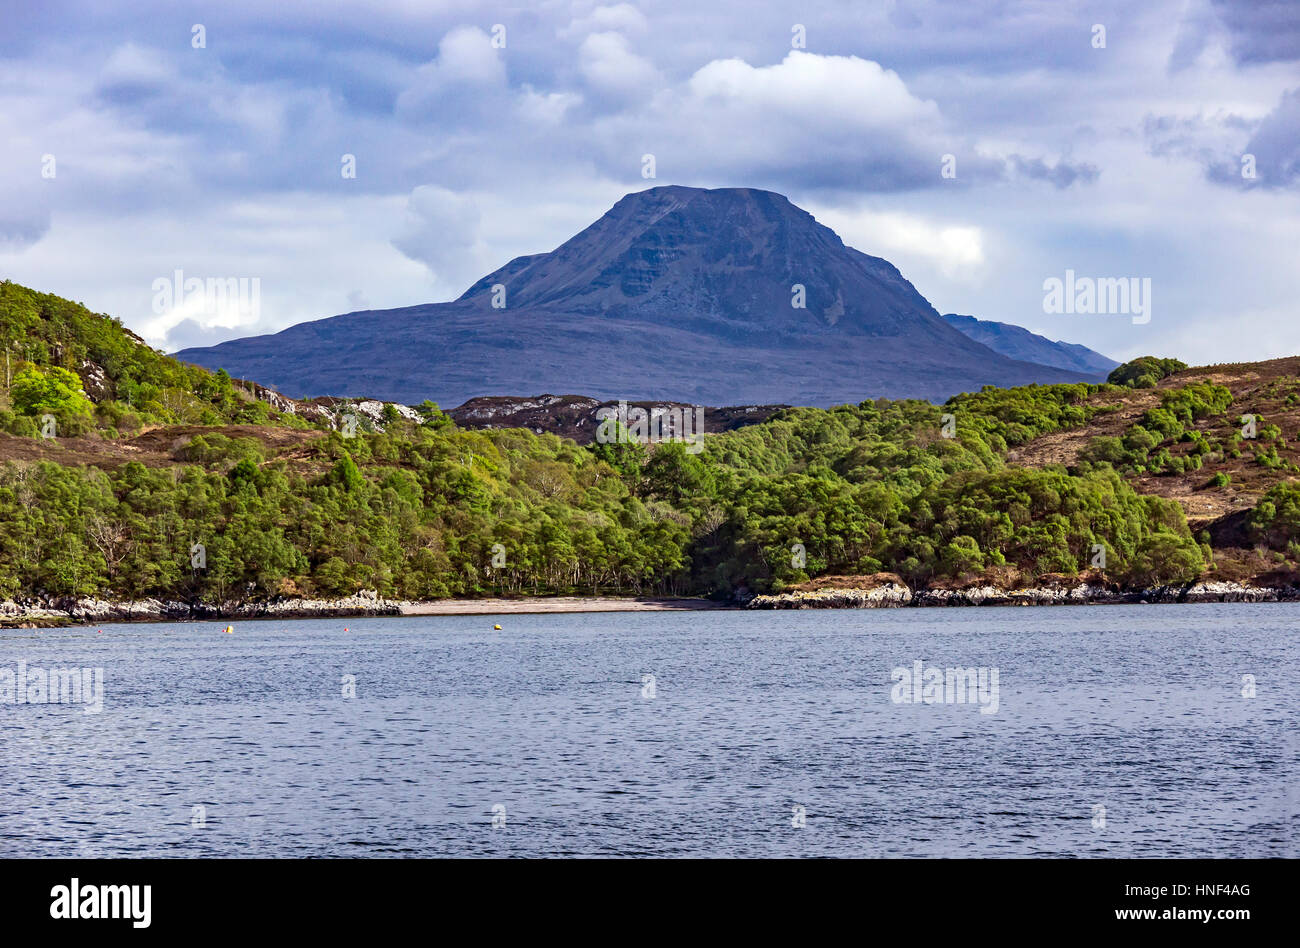 La montagne écossaise Slioch dominant les environs en Wester Ross West Highland comme vu du Loch Gairloch Banque D'Images